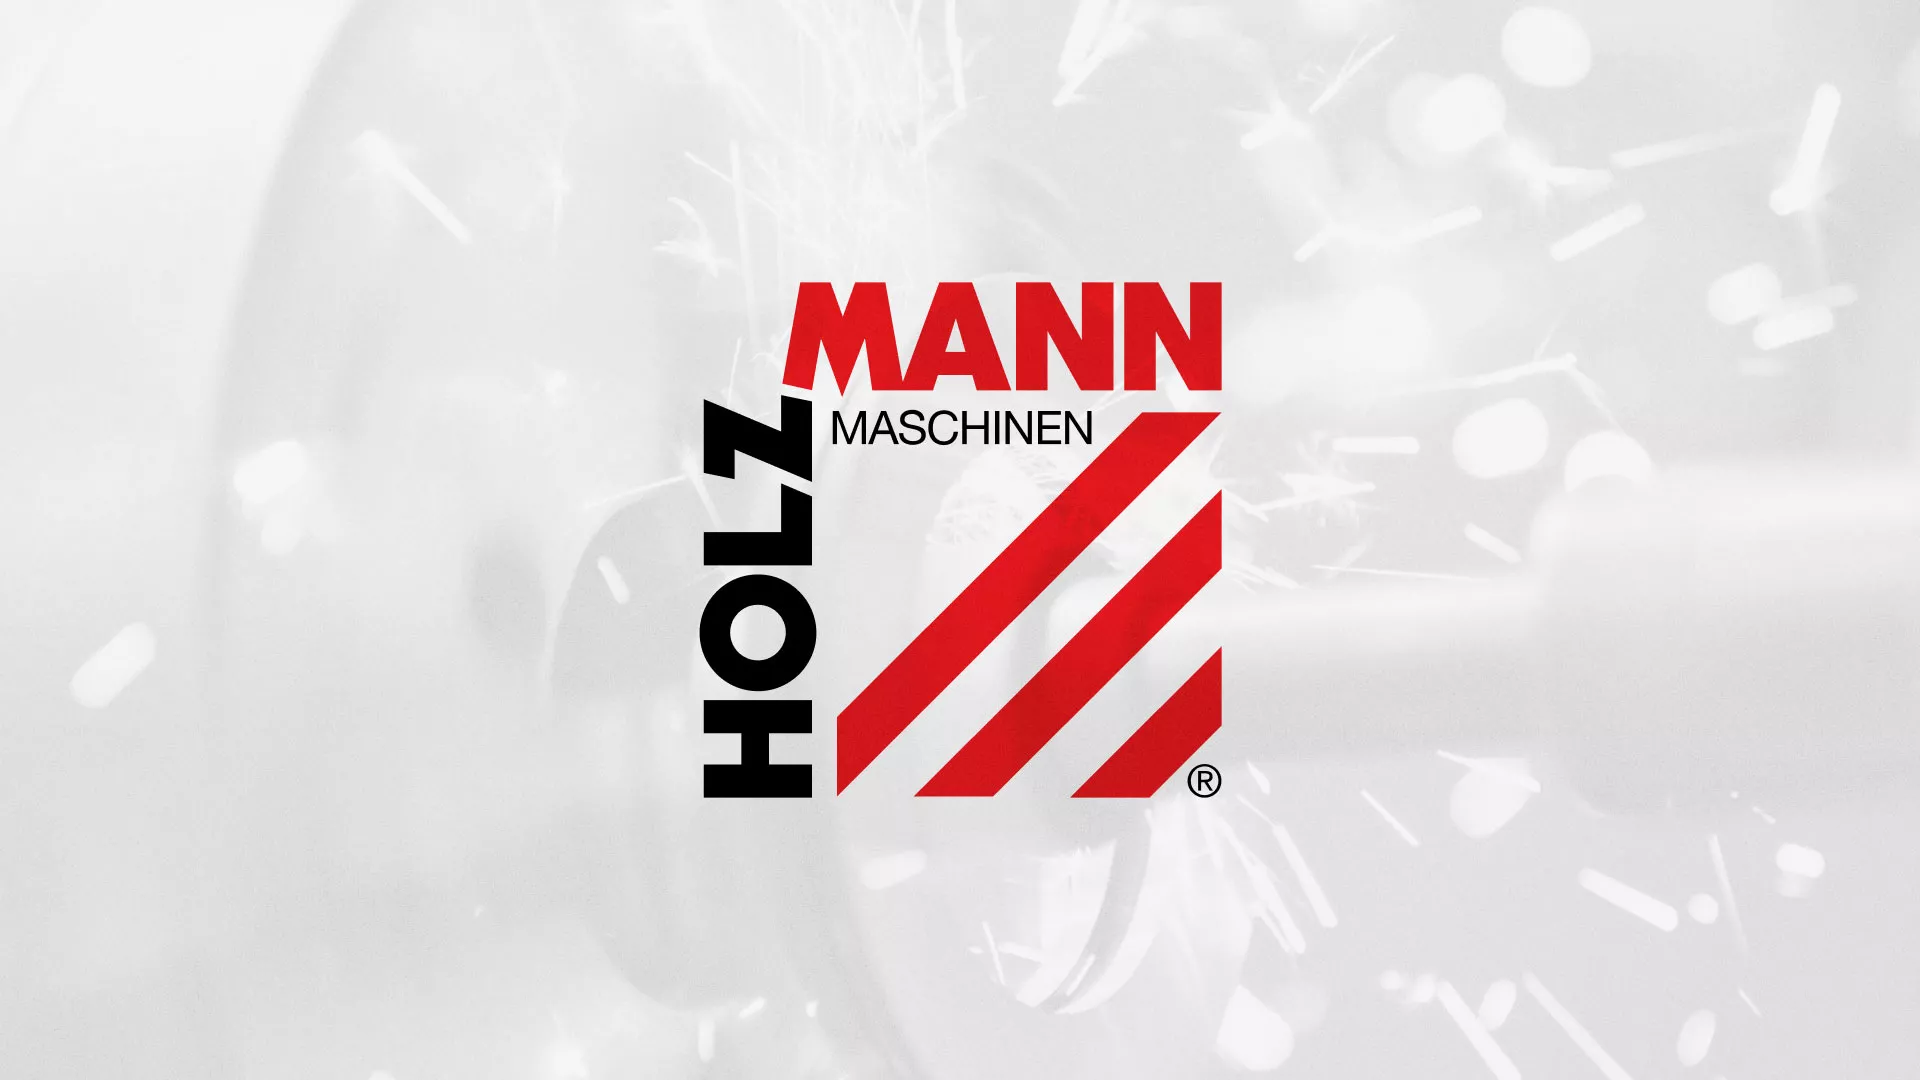 Создание сайта компании «HOLZMANN Maschinen GmbH» в Павлово